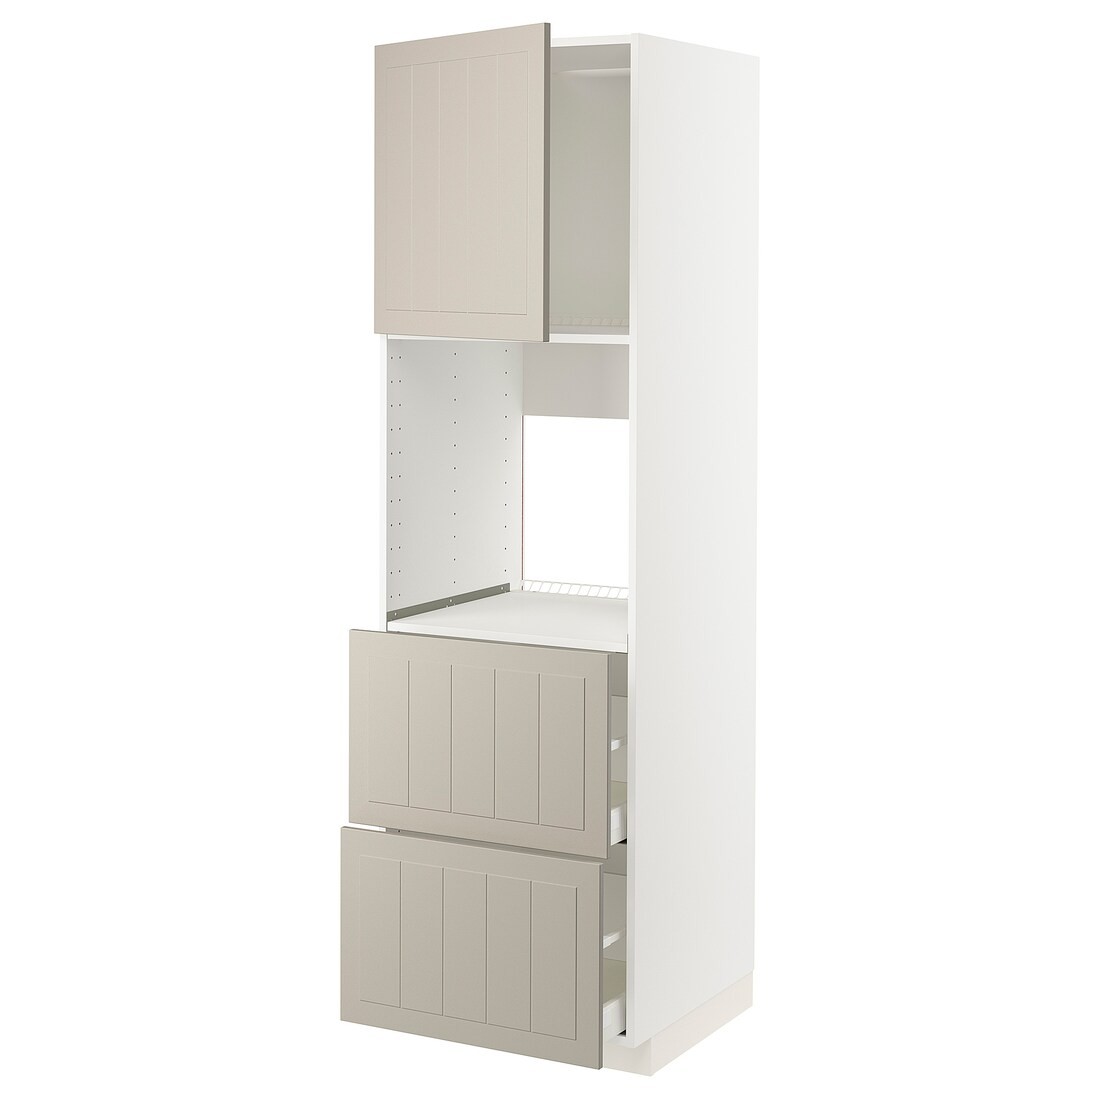 IKEA METOD МЕТОД / MAXIMERA МАКСИМЕРА Высокий шкаф для духовки с дверцей / ящиками, белый / Stensund бежевый, 60x60x200 см 29469662 | 294.696.62